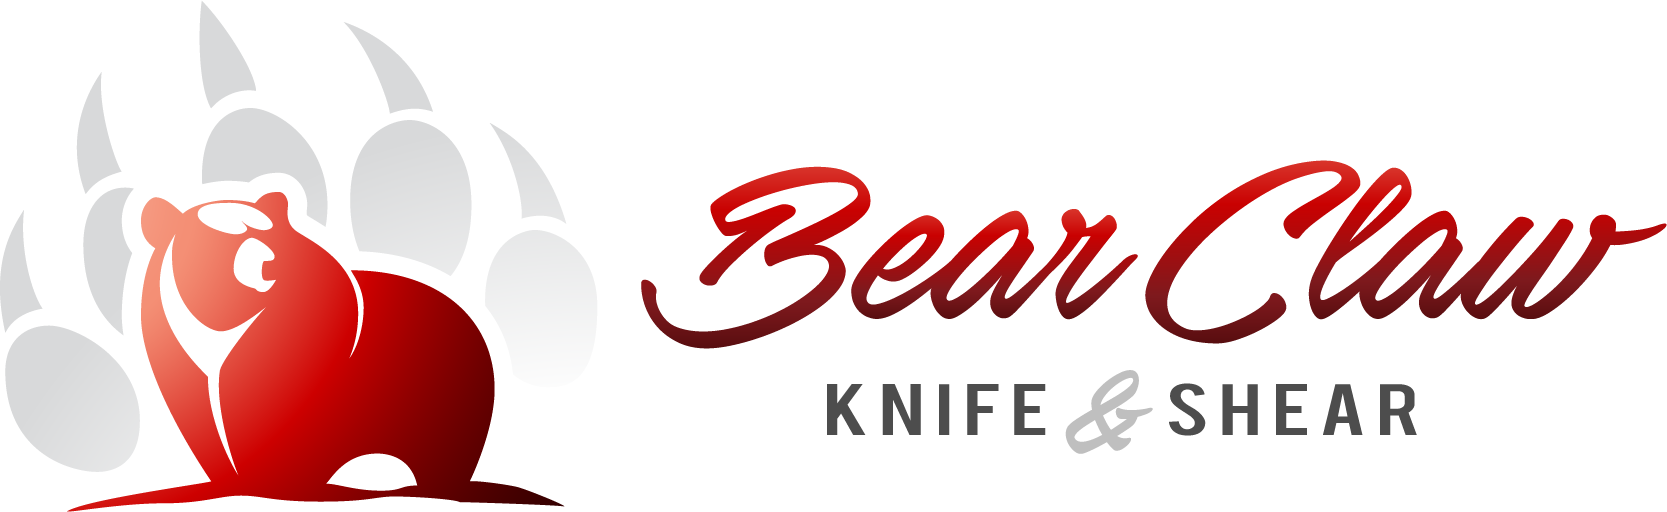 Bear Claw Knife & Shear